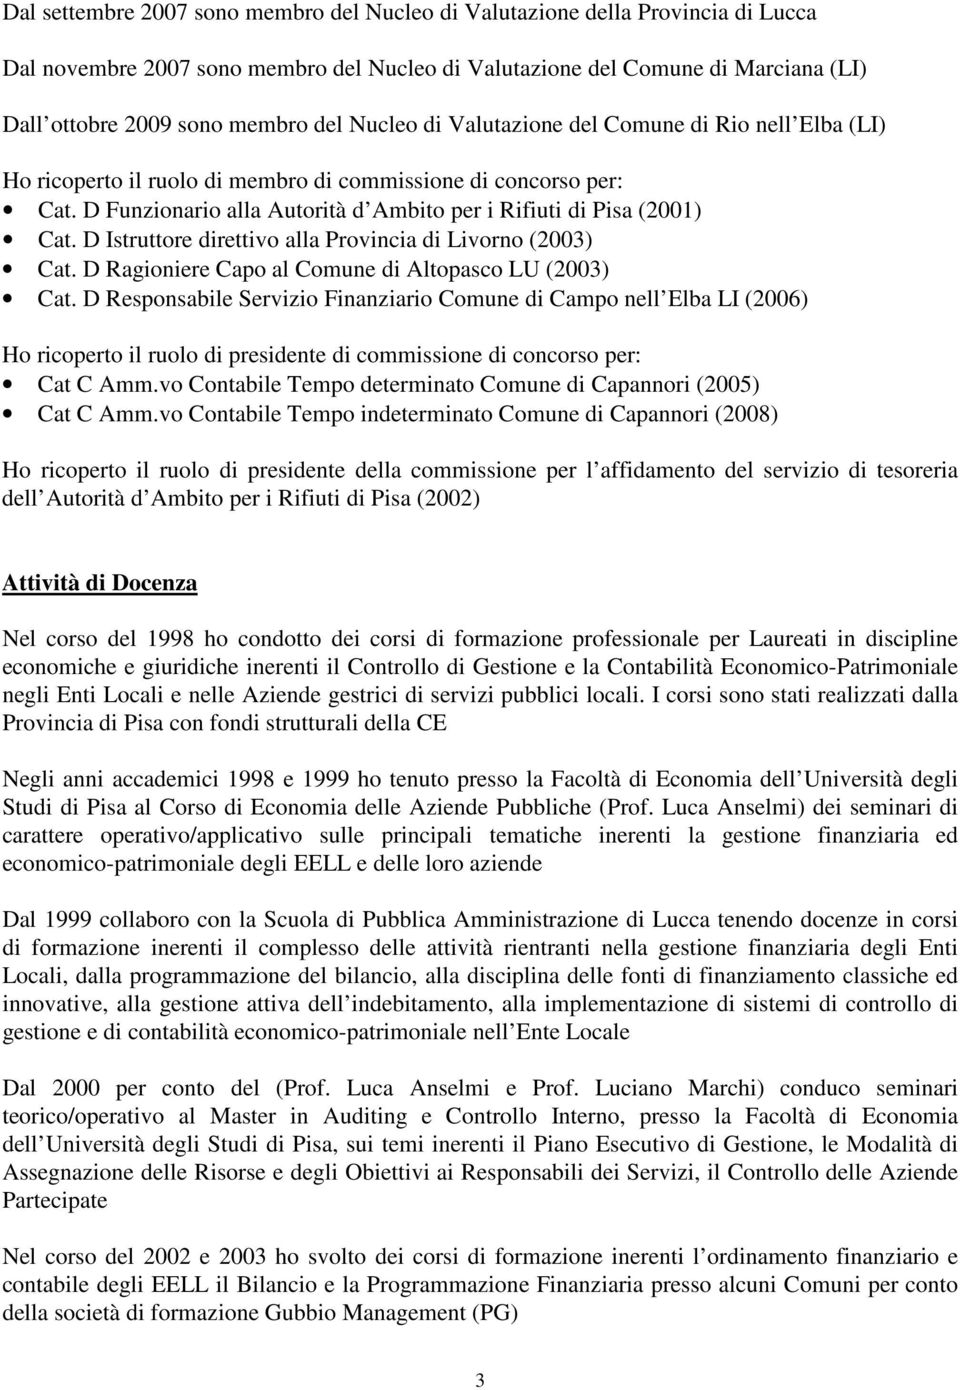 D Istruttore direttivo alla Provincia di Livorno (2003) Cat. D Ragioniere Capo al Comune di Altopasco LU (2003) Cat.